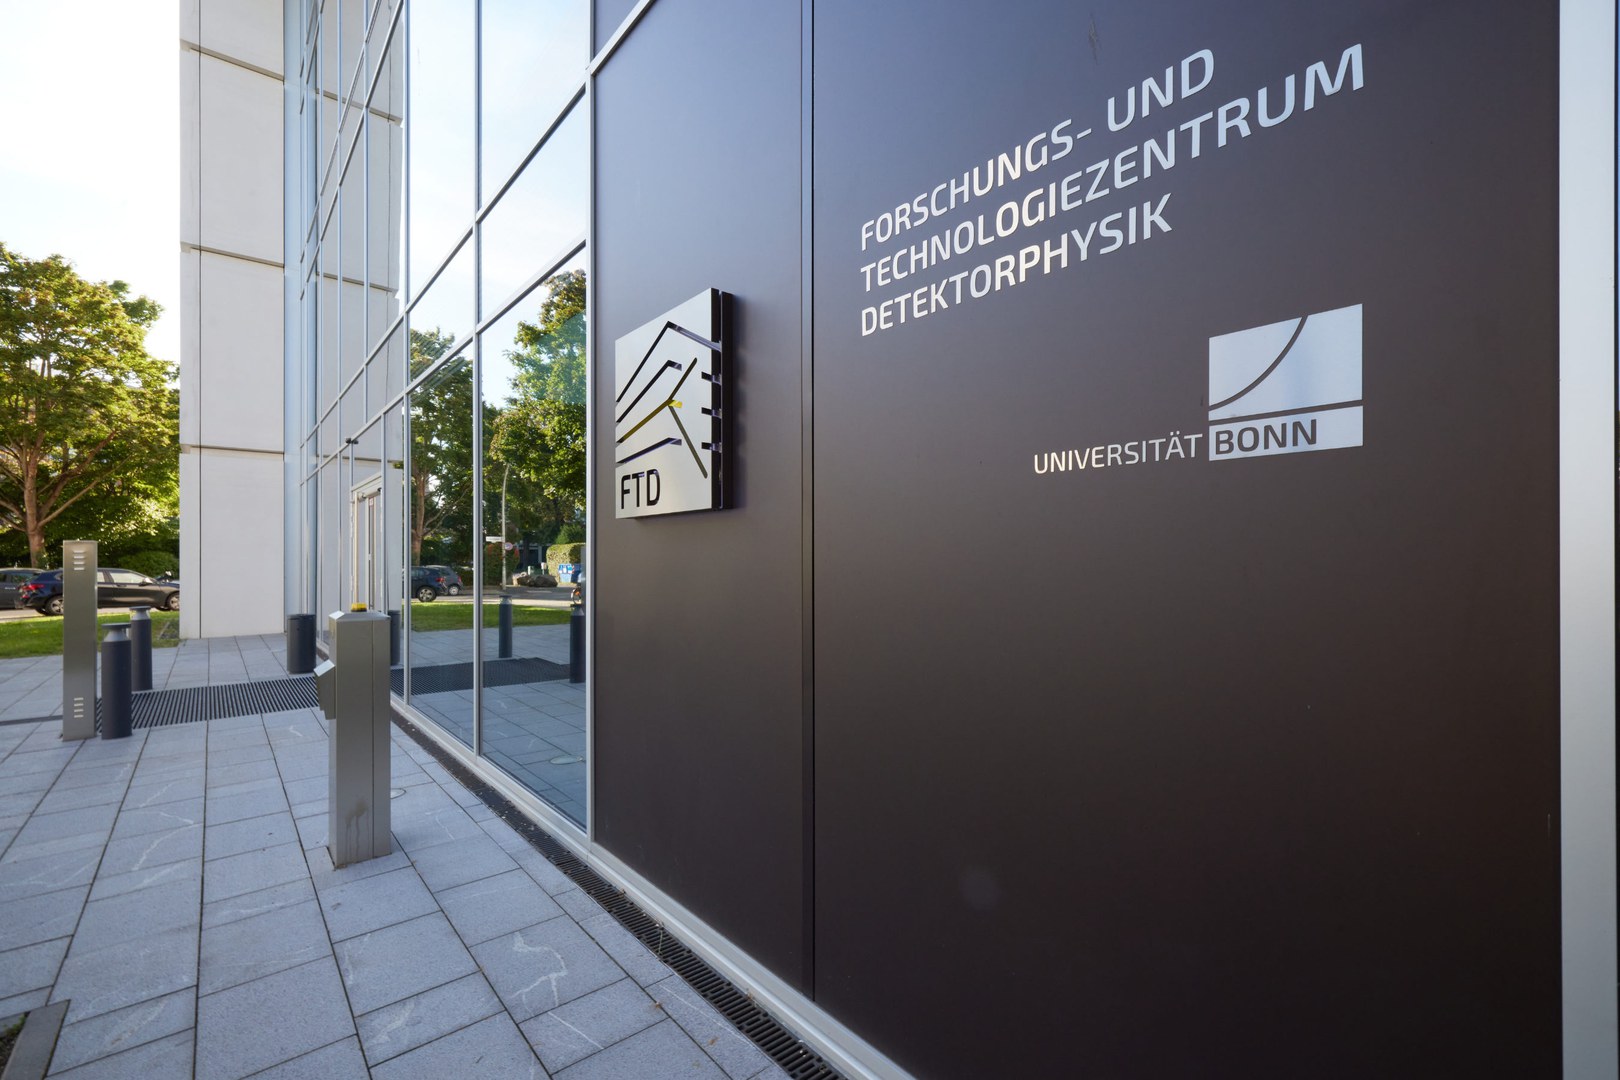 Das neue Gebäude für das Forschungs- und Technologiezentrum Detektorphysik